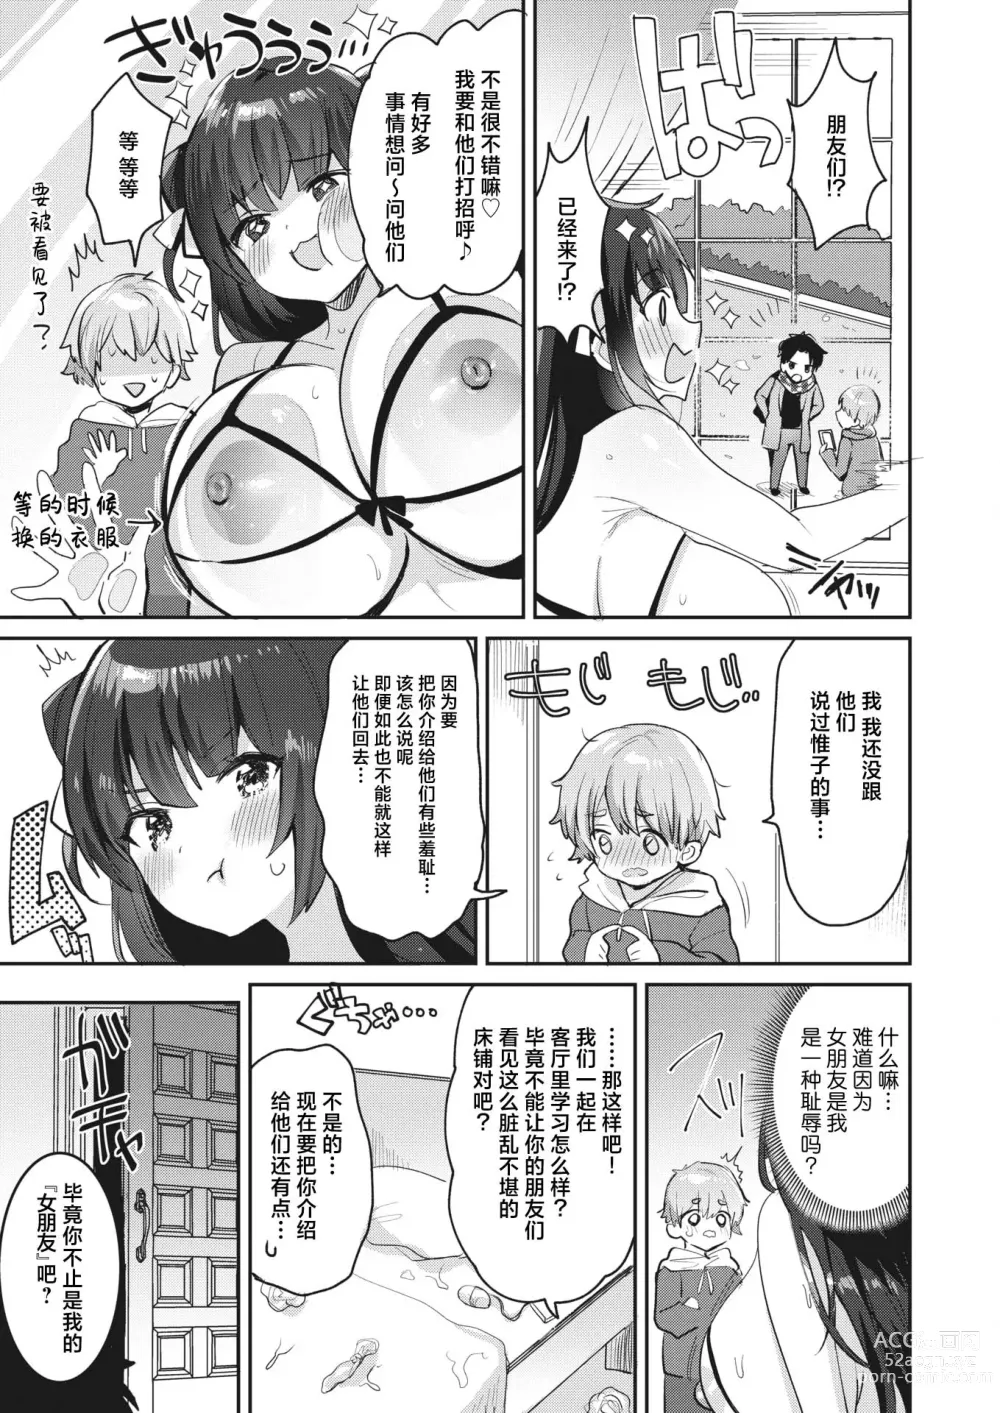 Page 5 of manga Watashi wa Anata no Onee-chan